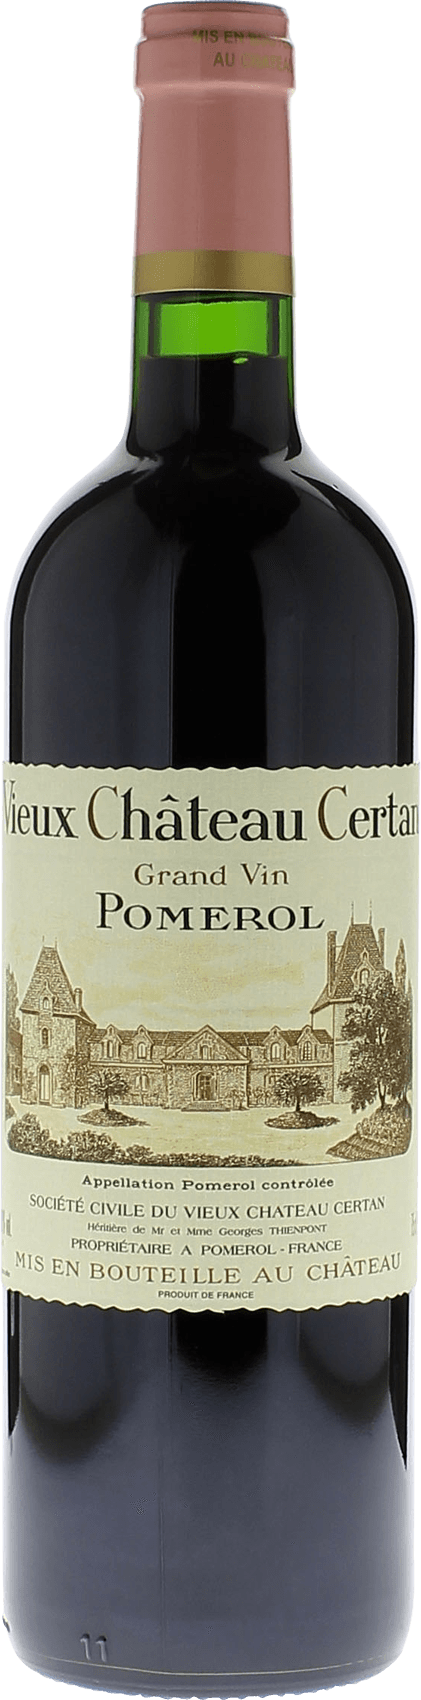 Vieux chteau  certan 1982  Pomerol, Bordeaux rouge